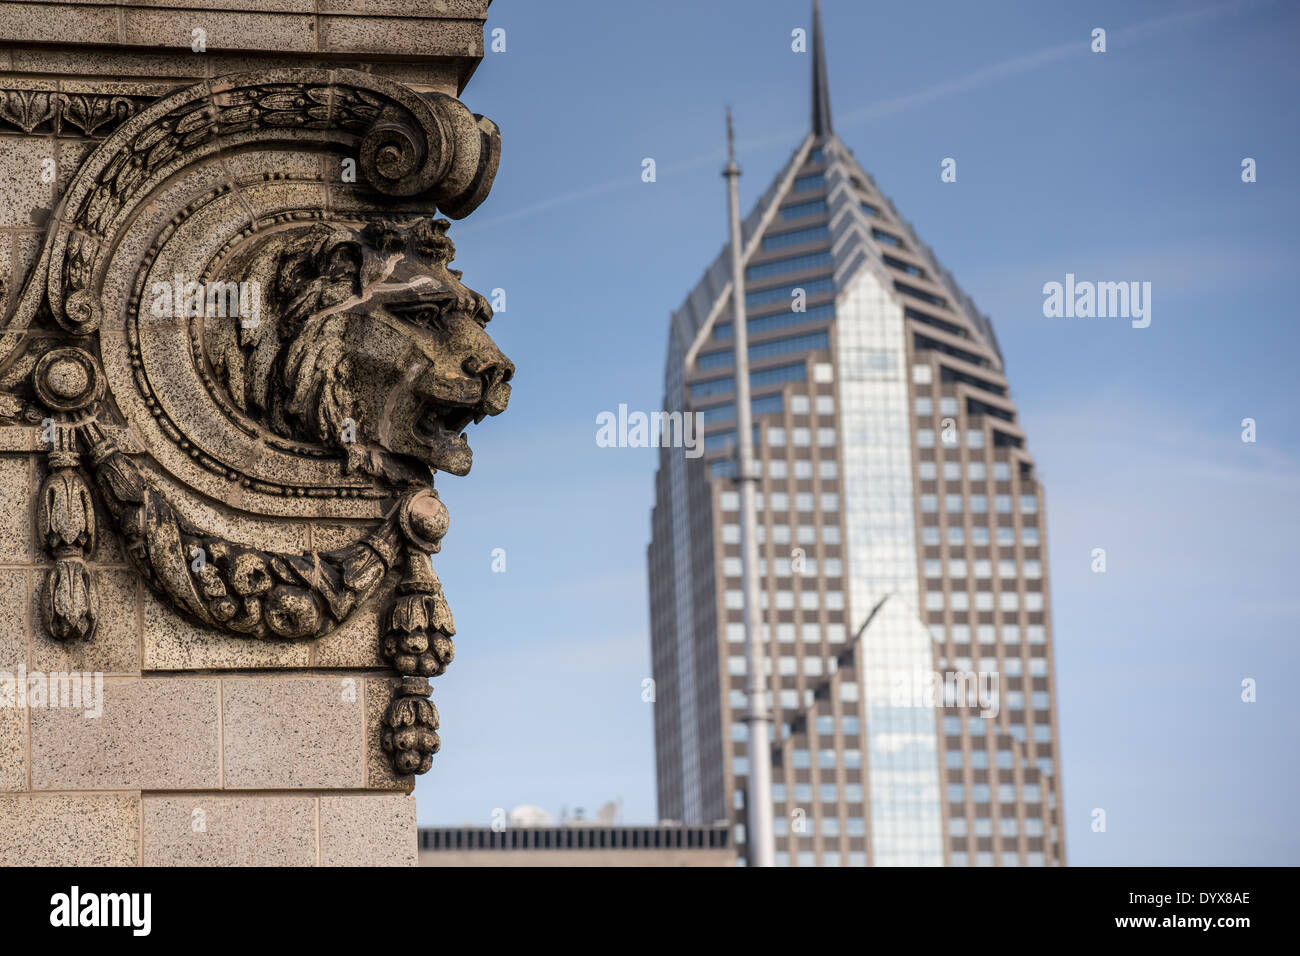 Lions Head sur un bâtiment avec Two Prudential Plaza Tower vu de la falaise citadins Club de Chicago, Illinois USA Banque D'Images